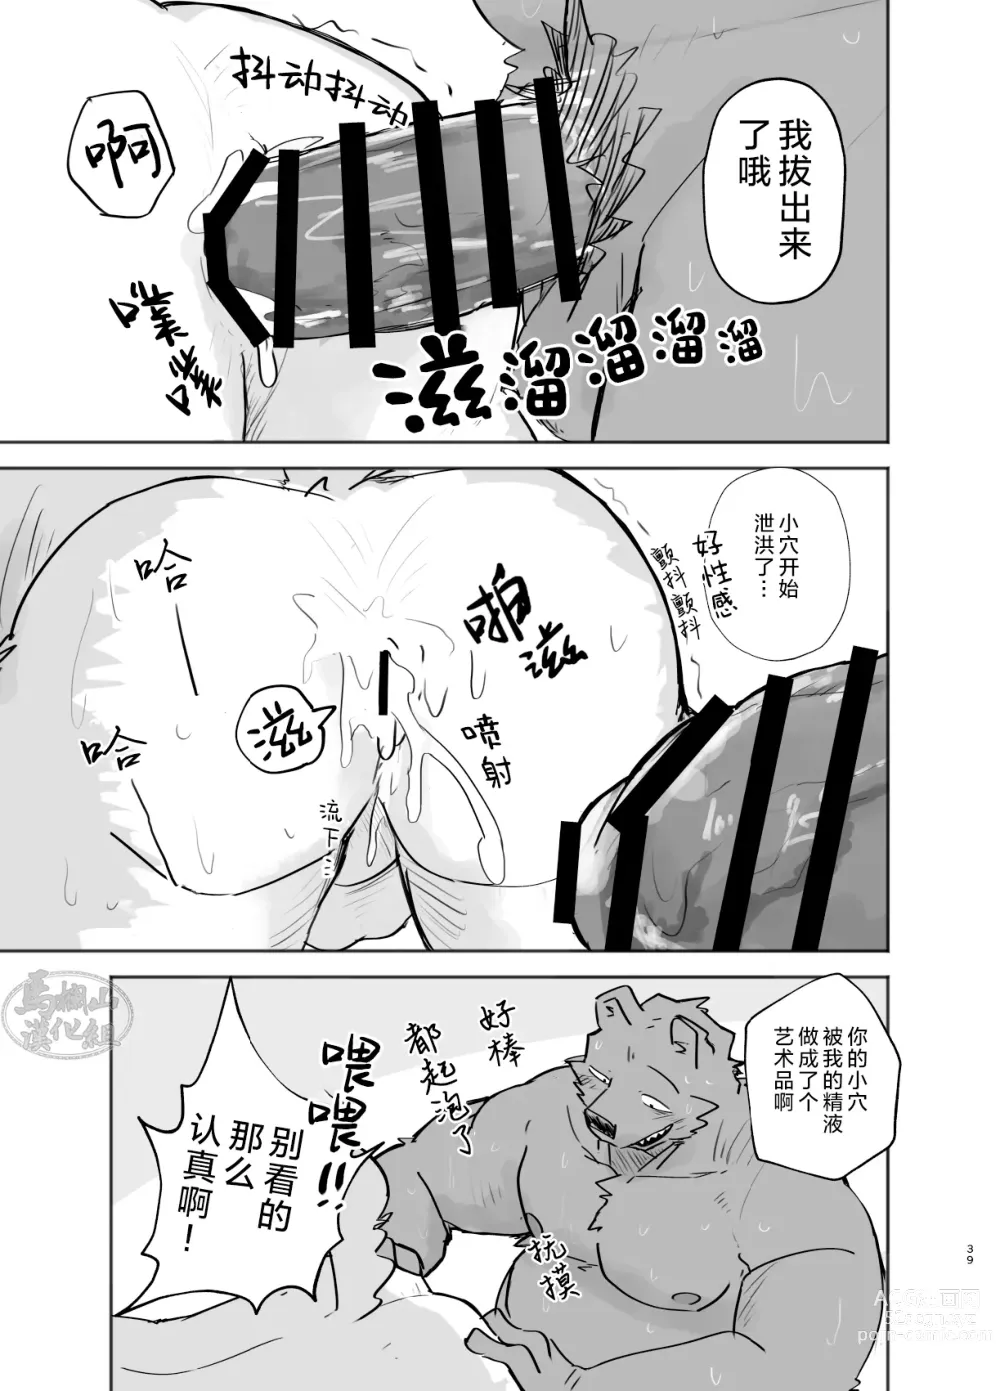 Page 39 of doujinshi 温泉野合时